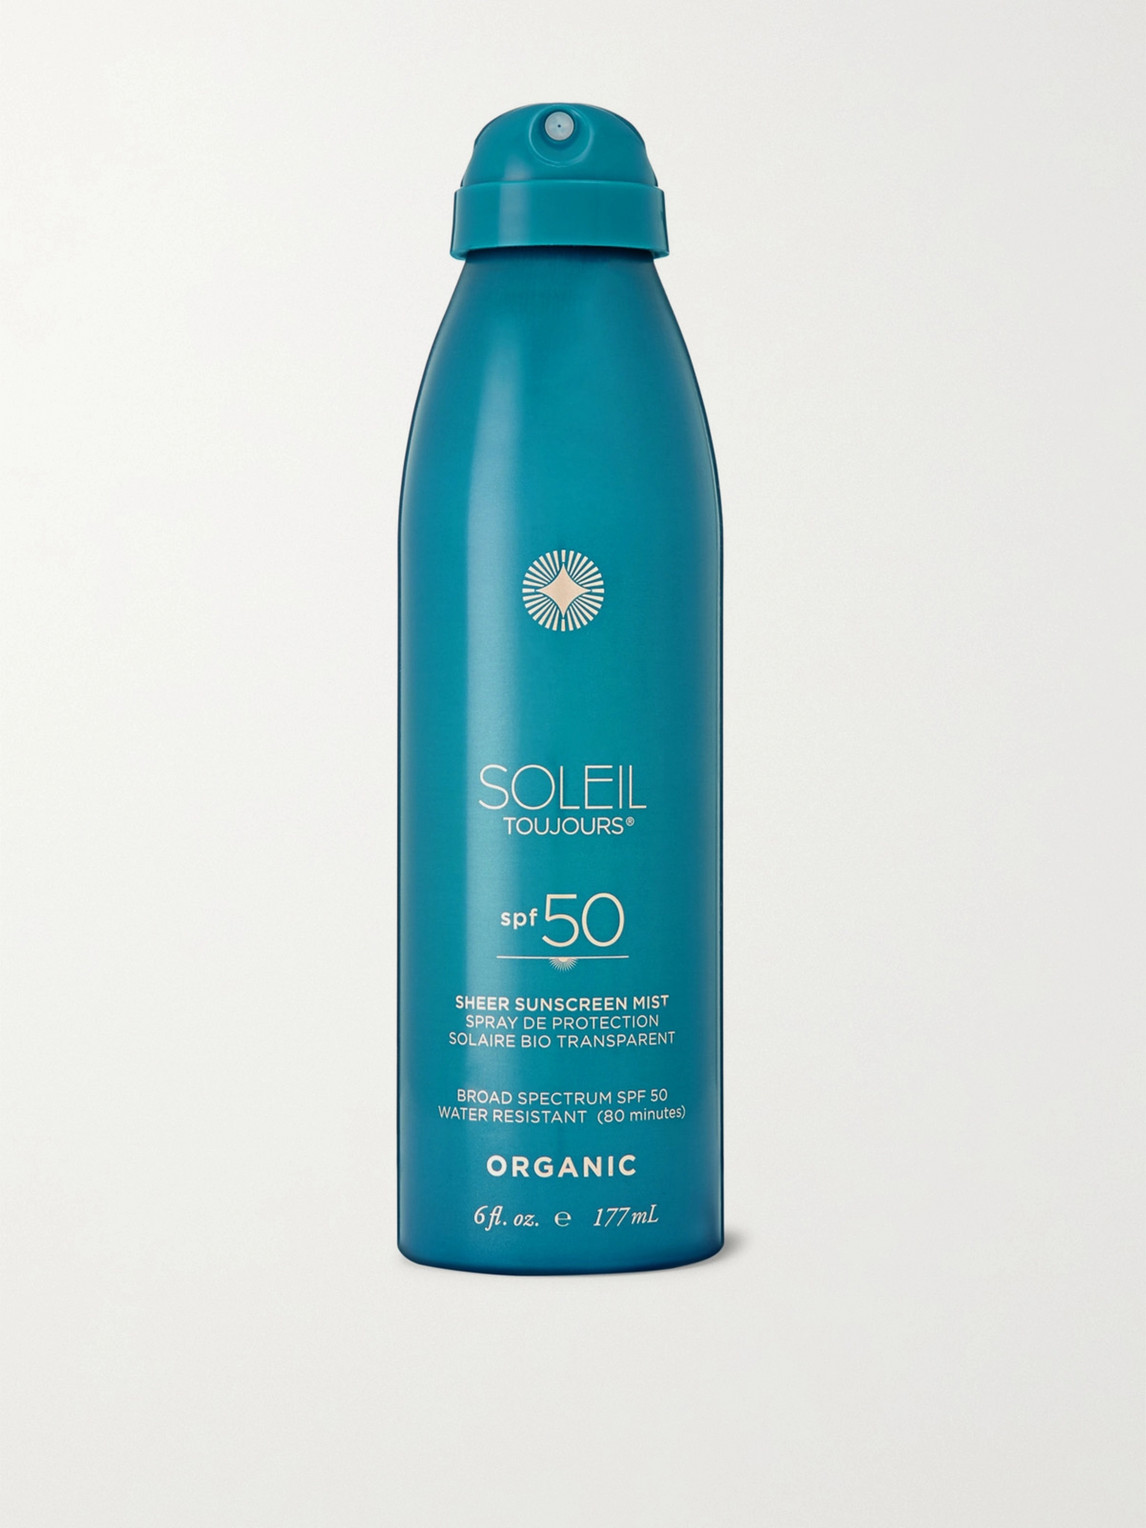 Soleil Toujours Organic Sheer Sunscreen Mist Spf50, 177ml In Colourless